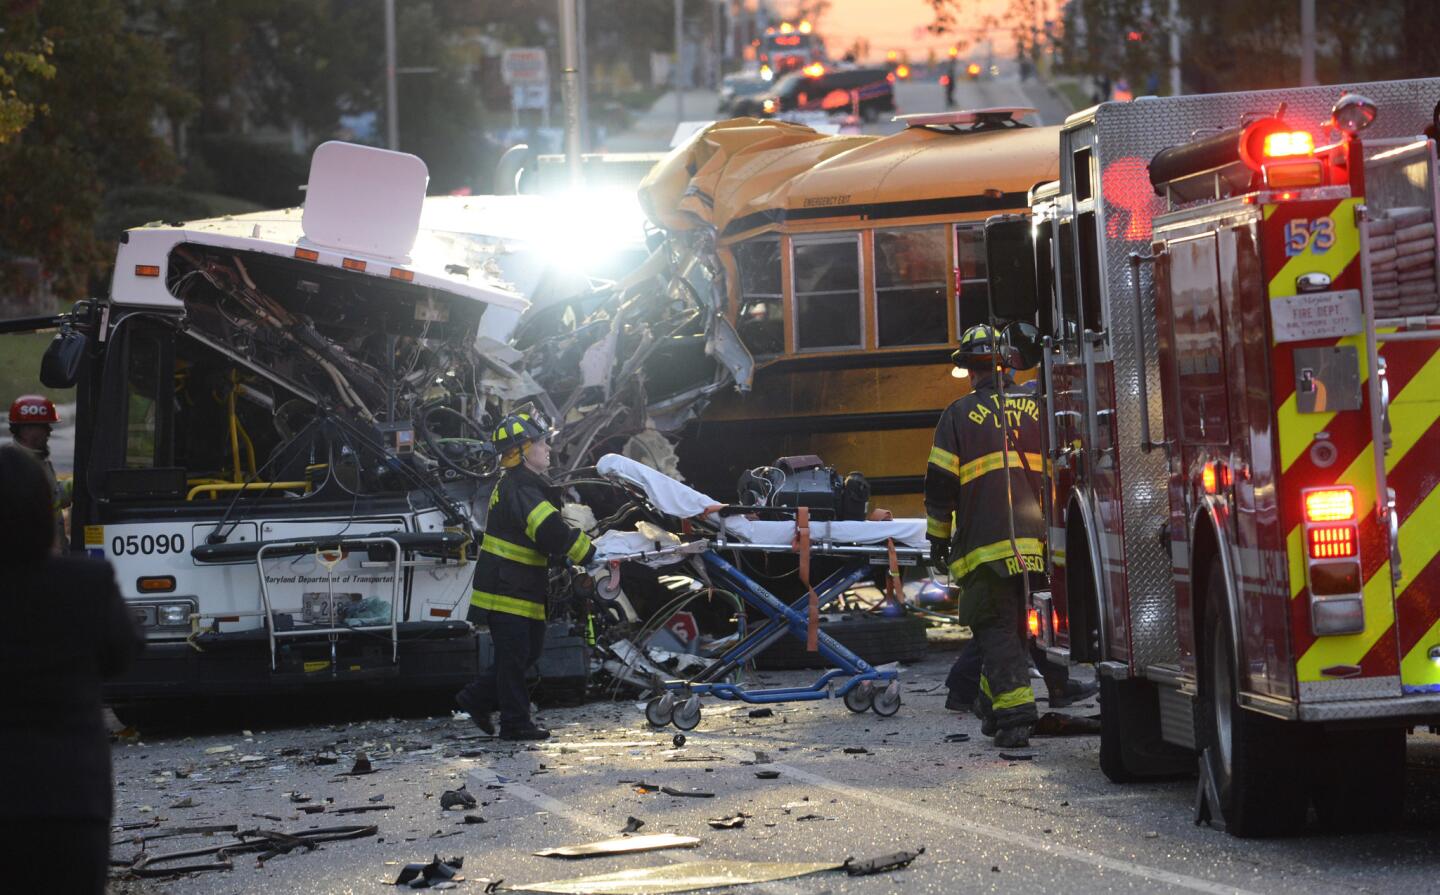 Buses collide